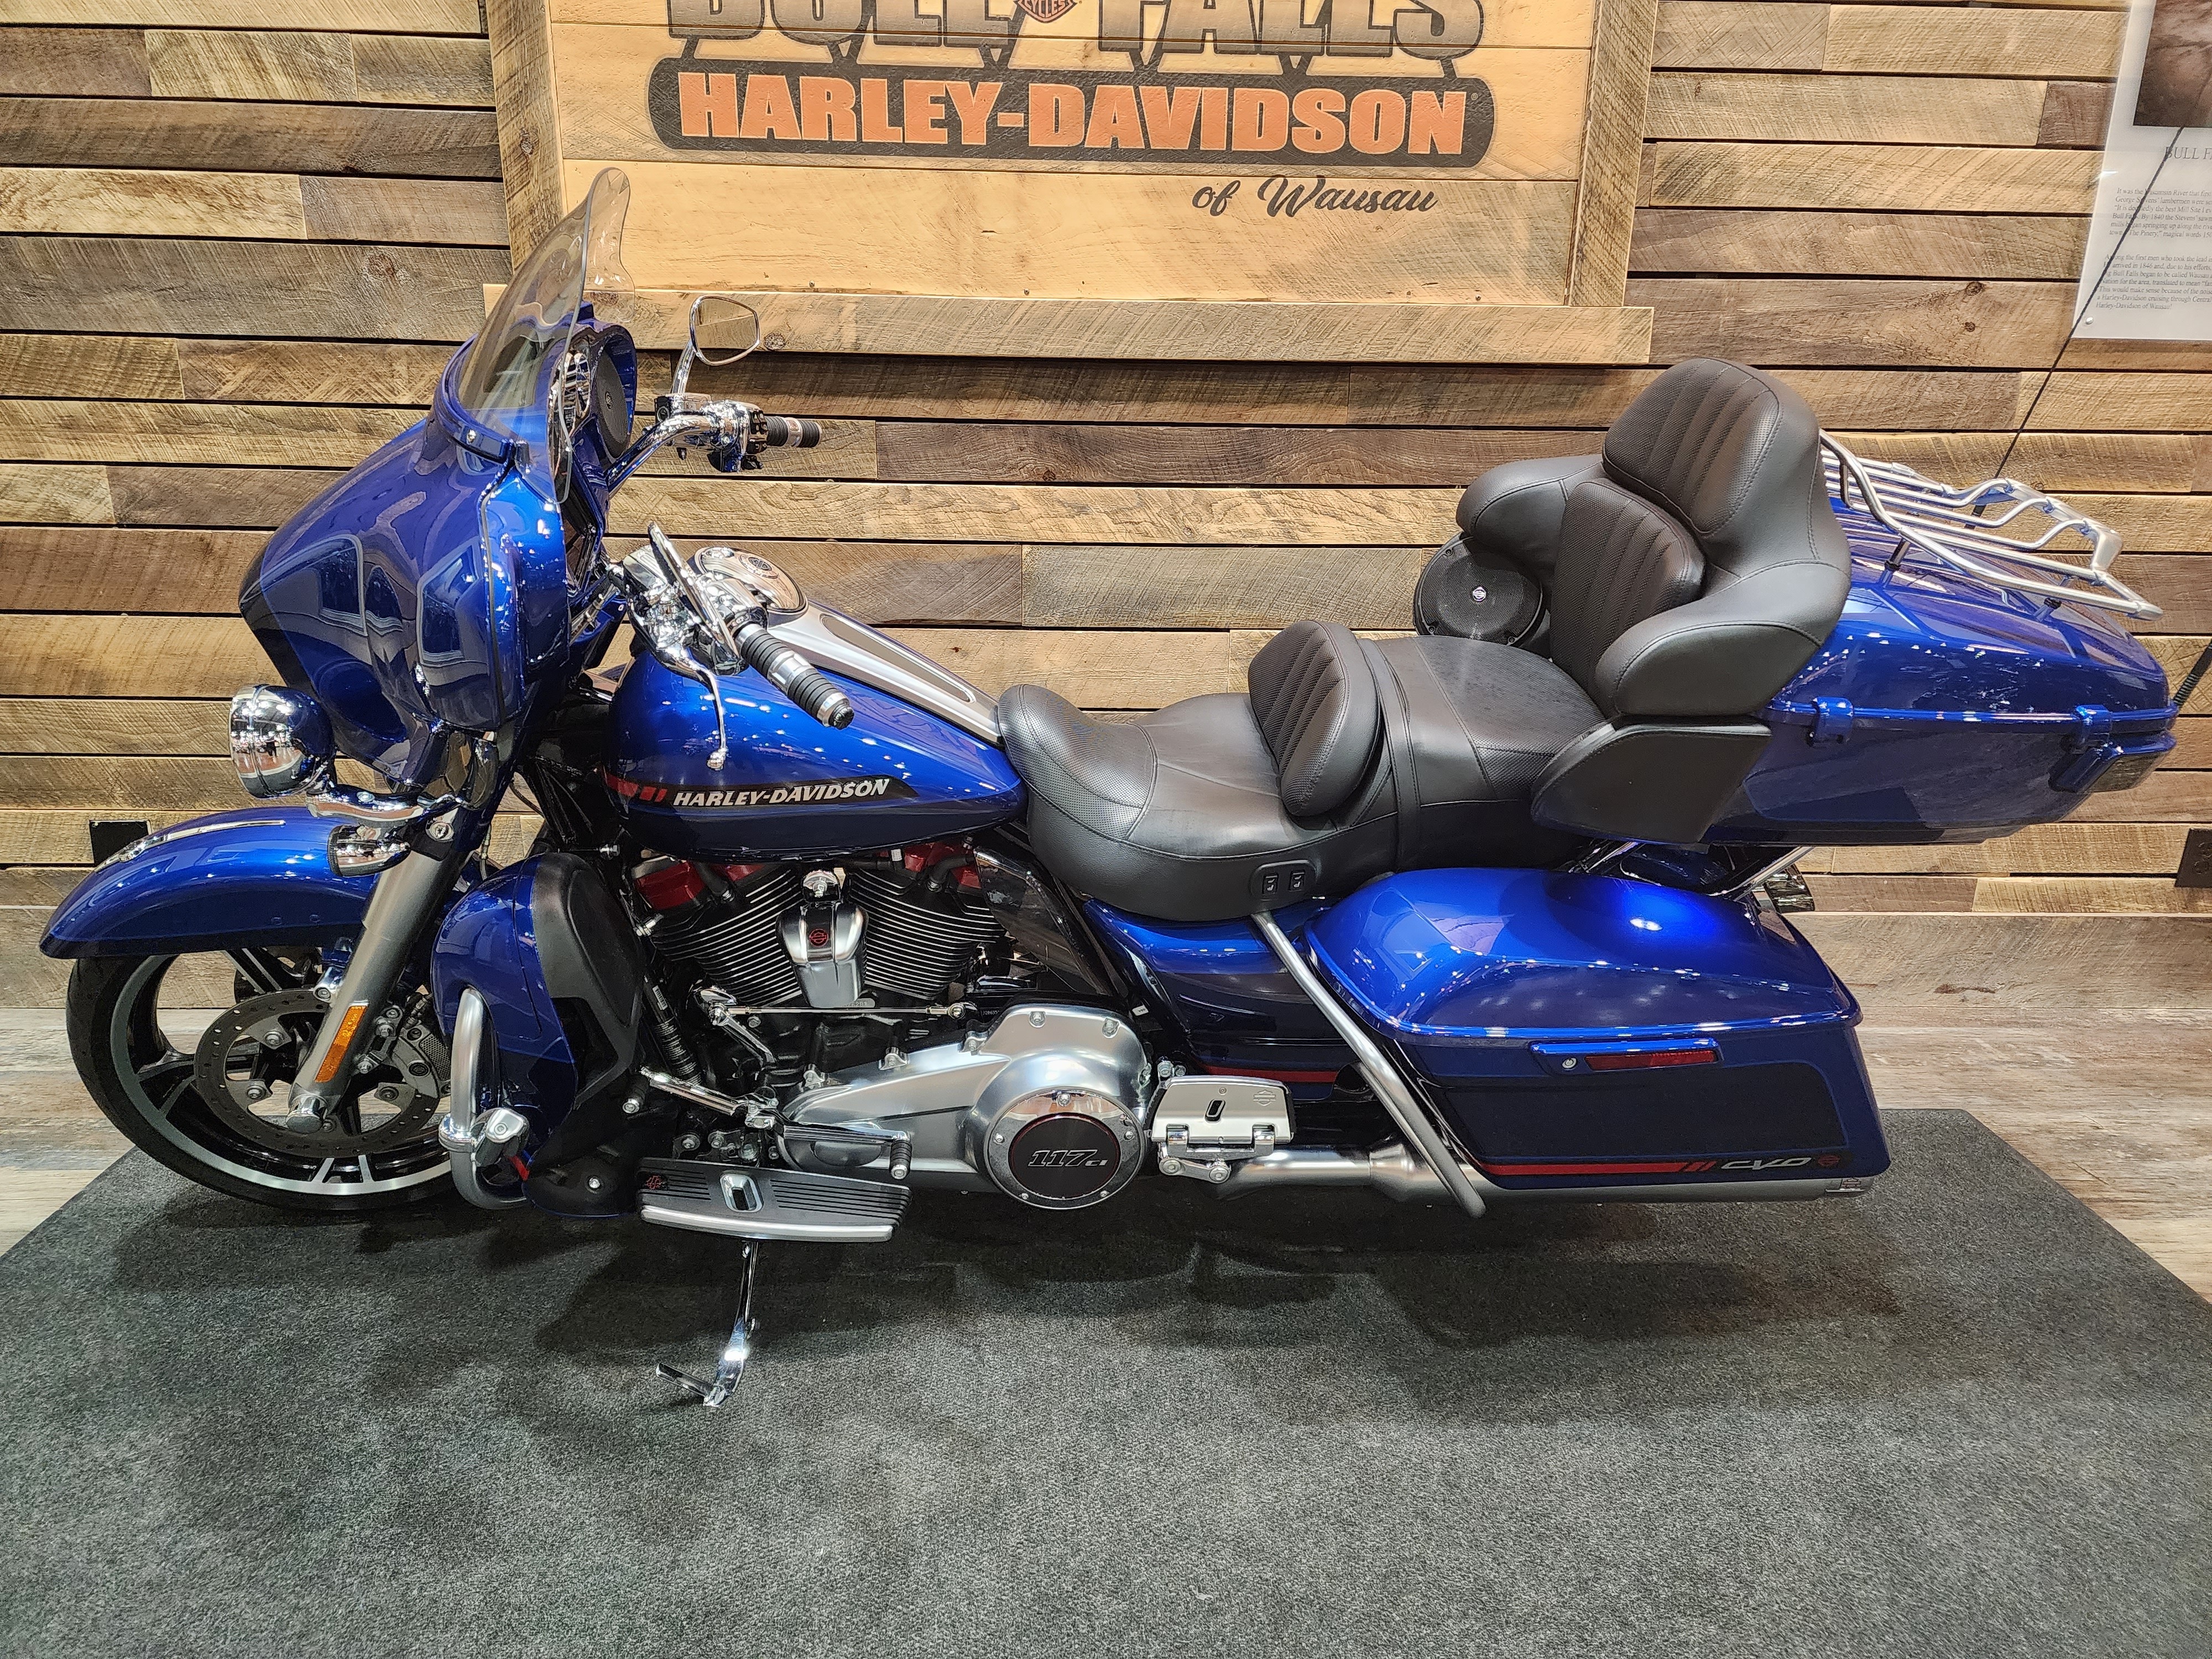 2020 Harley-Davidson CVO CVO Limited at Bull Falls Harley-Davidson